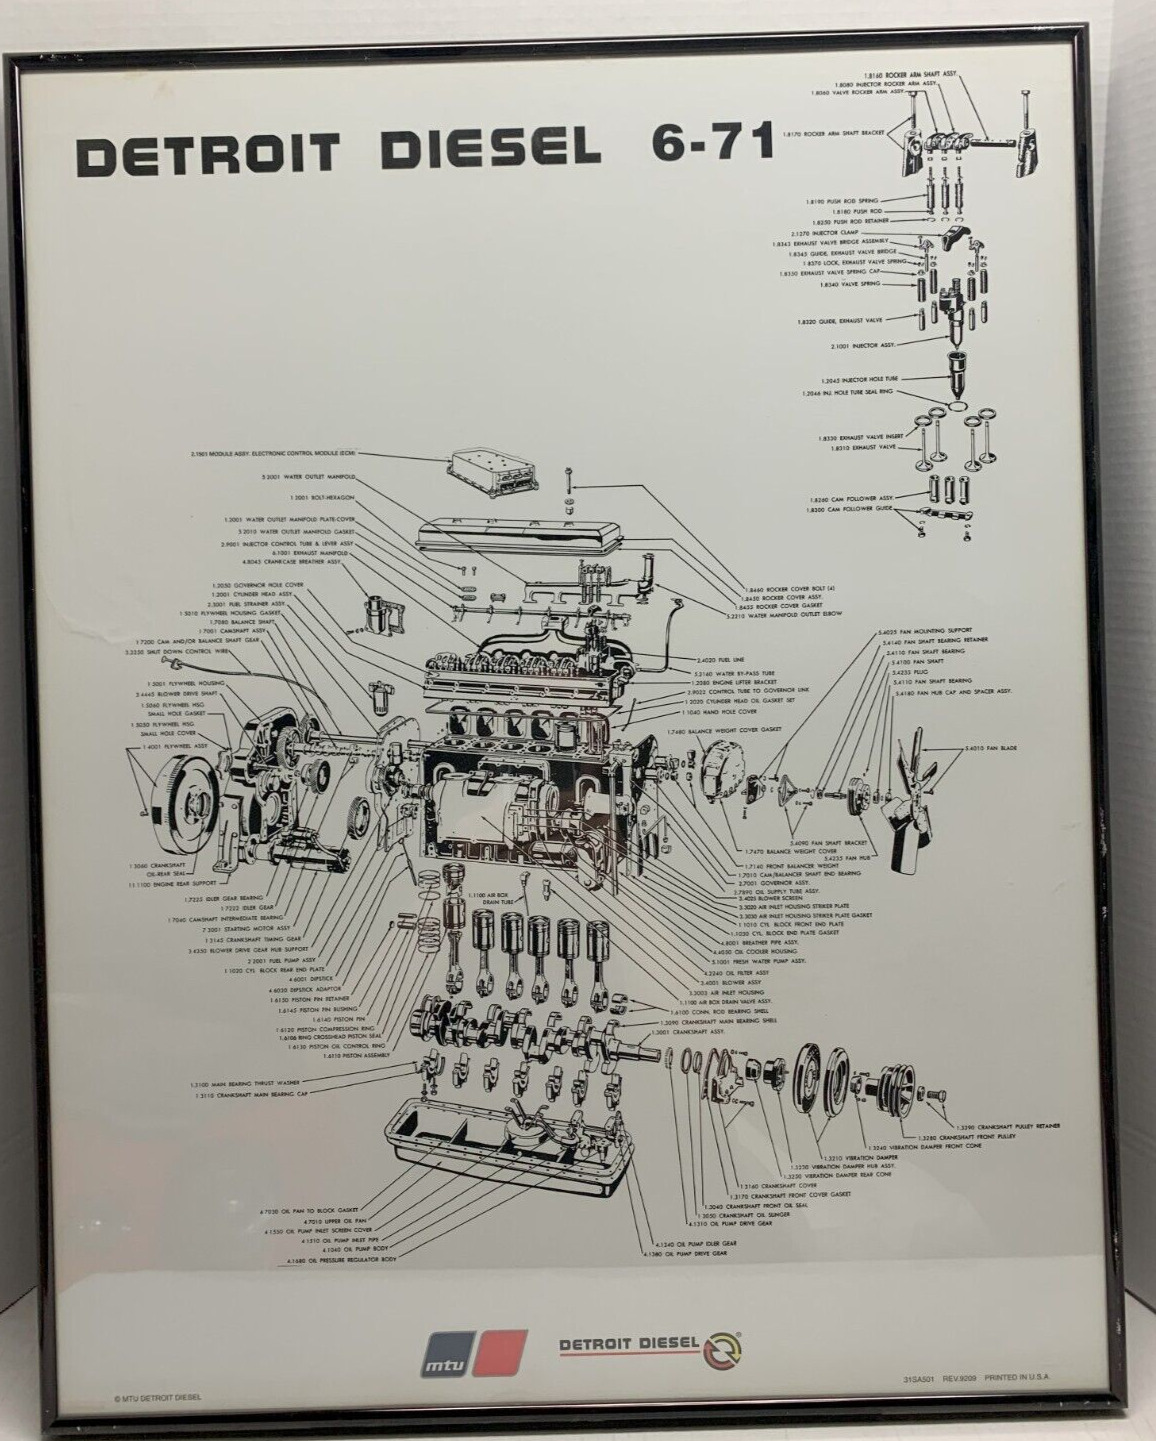 Man Cave Sign, Detroit Diesel Engine, Diesel Shop Sign